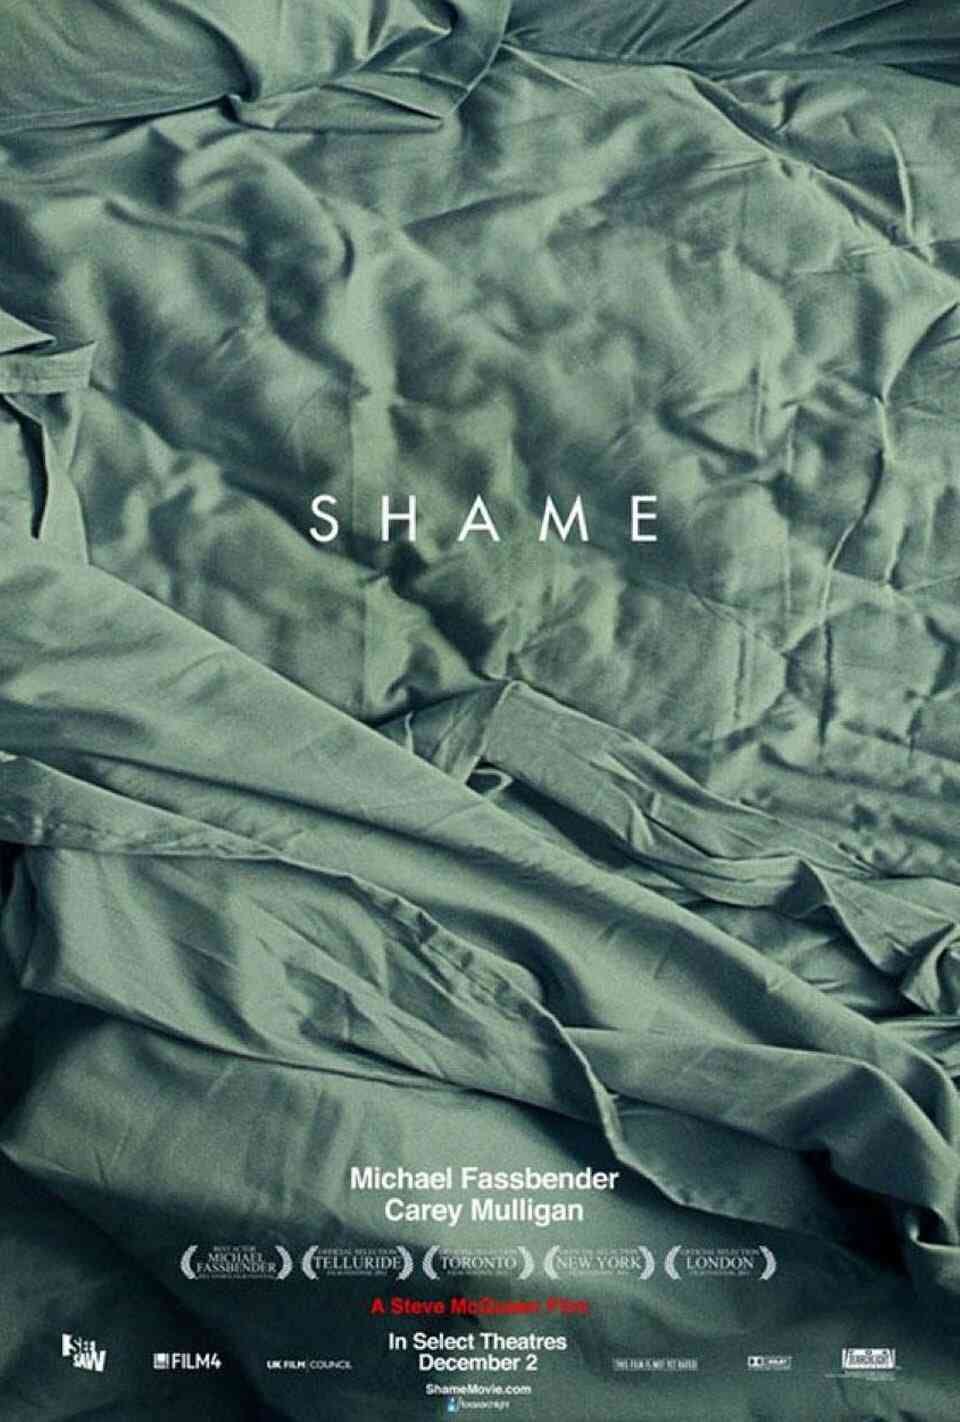 Read Shame screenplay.